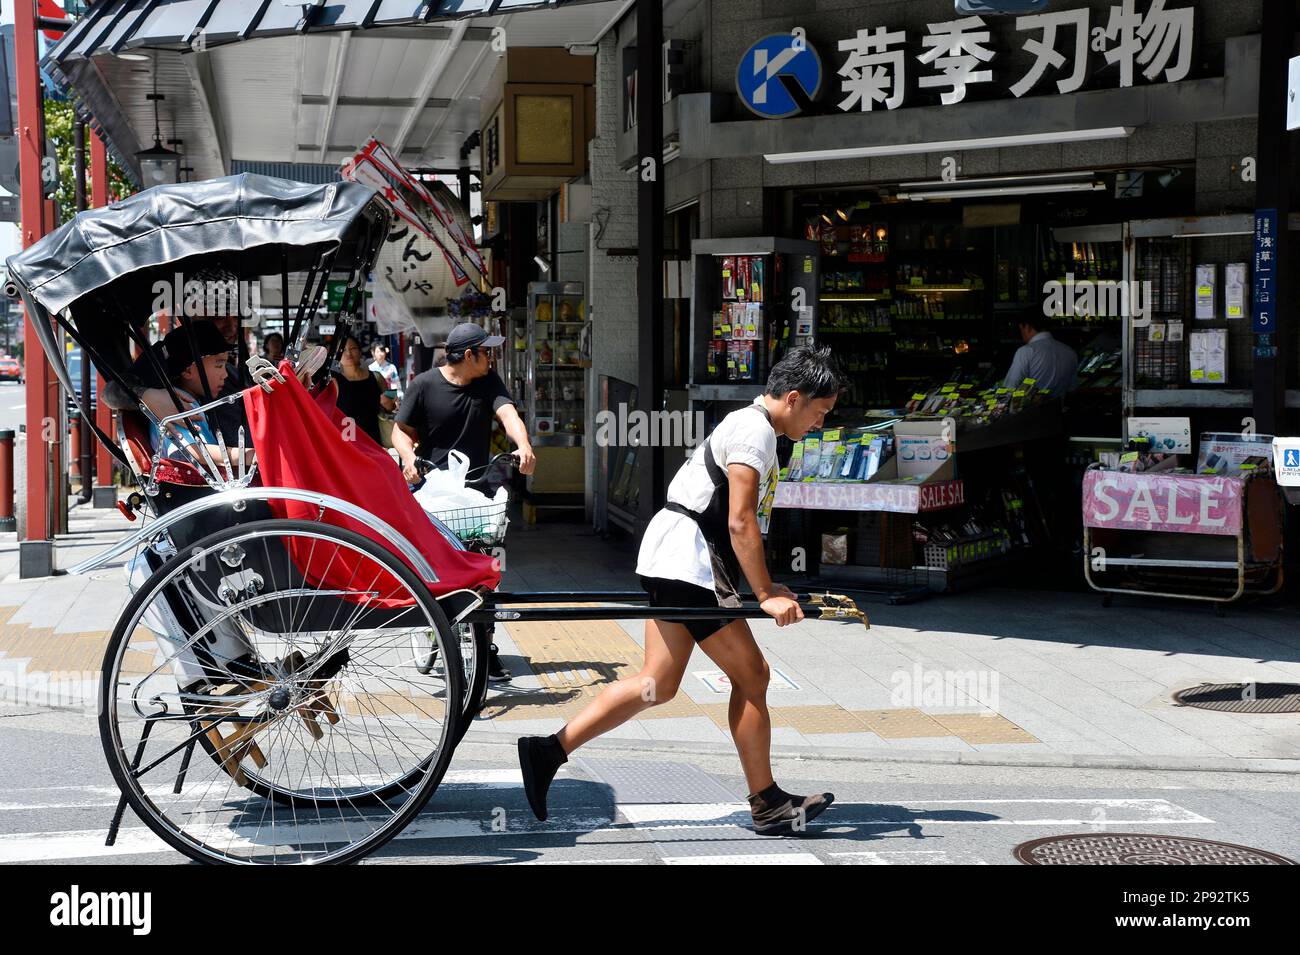 Excursion en pousse-pousse à Tokyo - Japon Banque D'Images